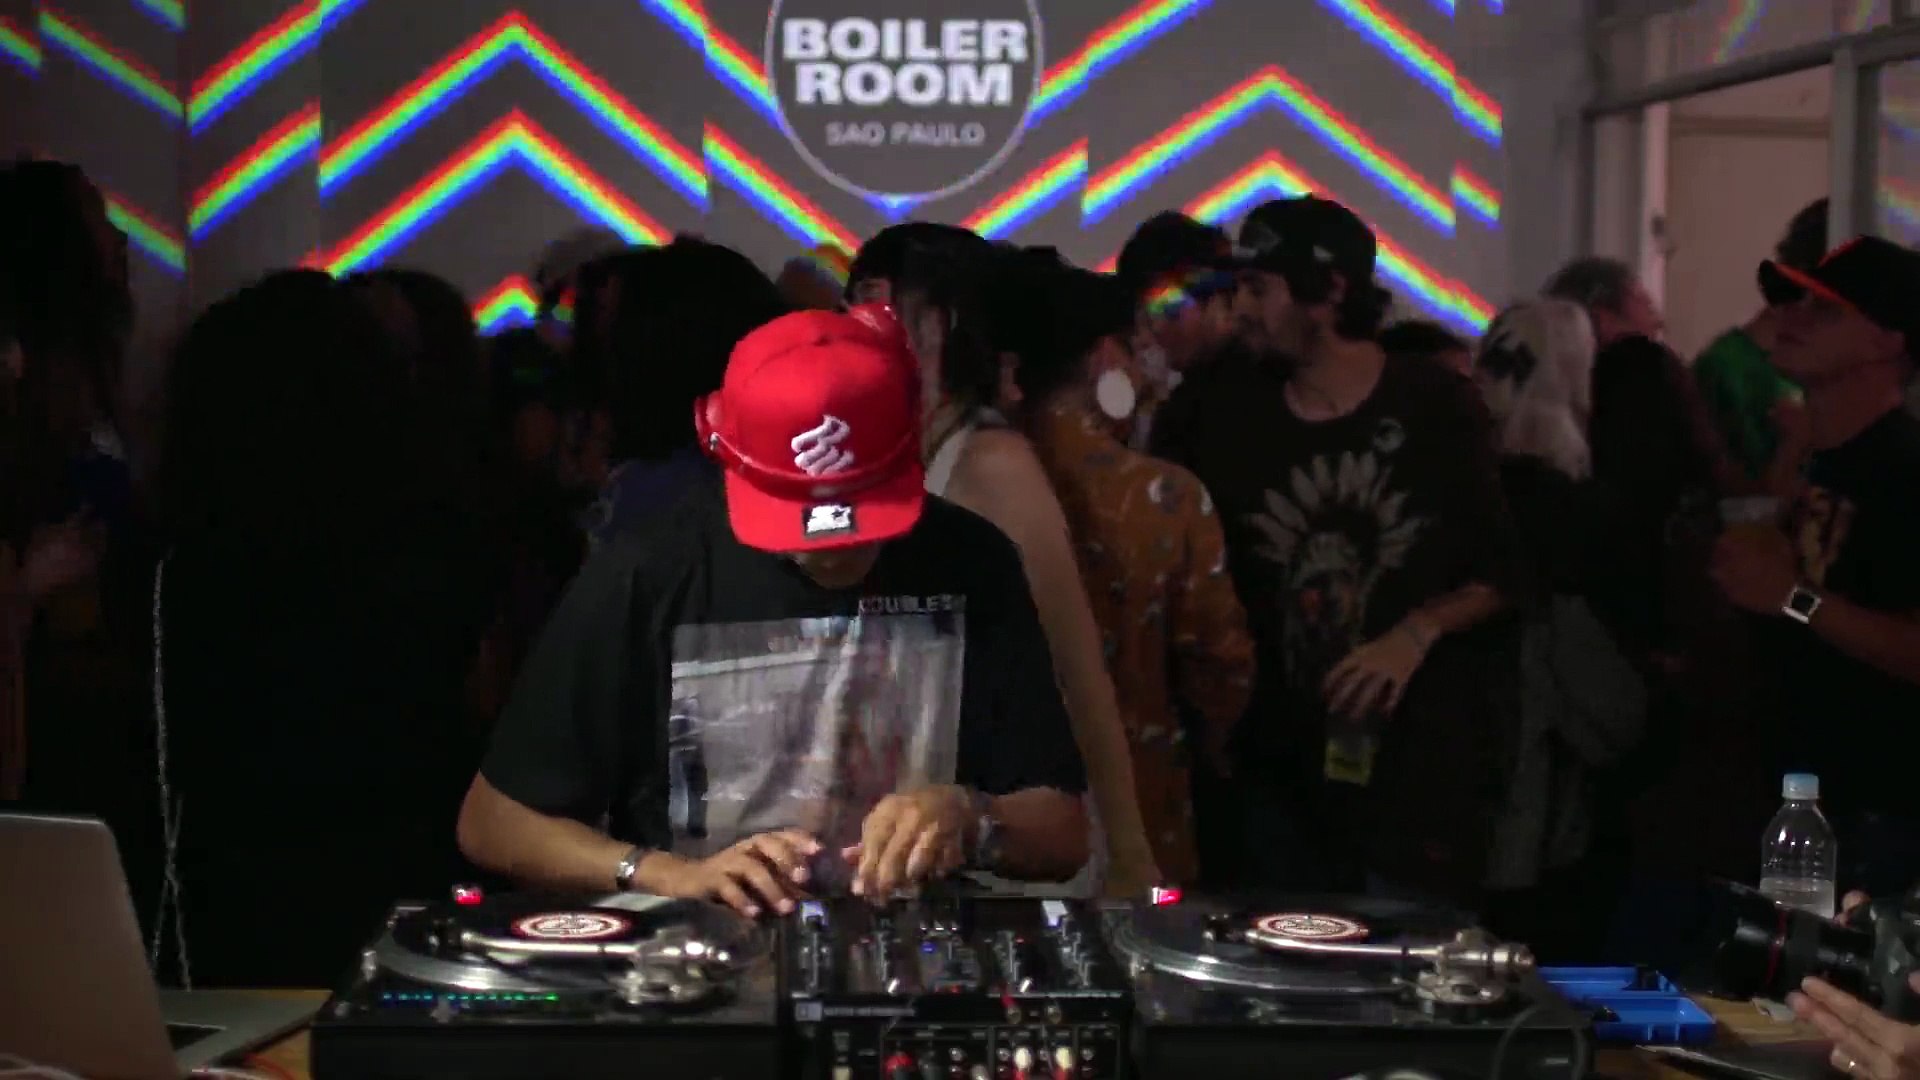 DJ Cia Boiler Room Sao Paulo DJ Set - video Dailymotion